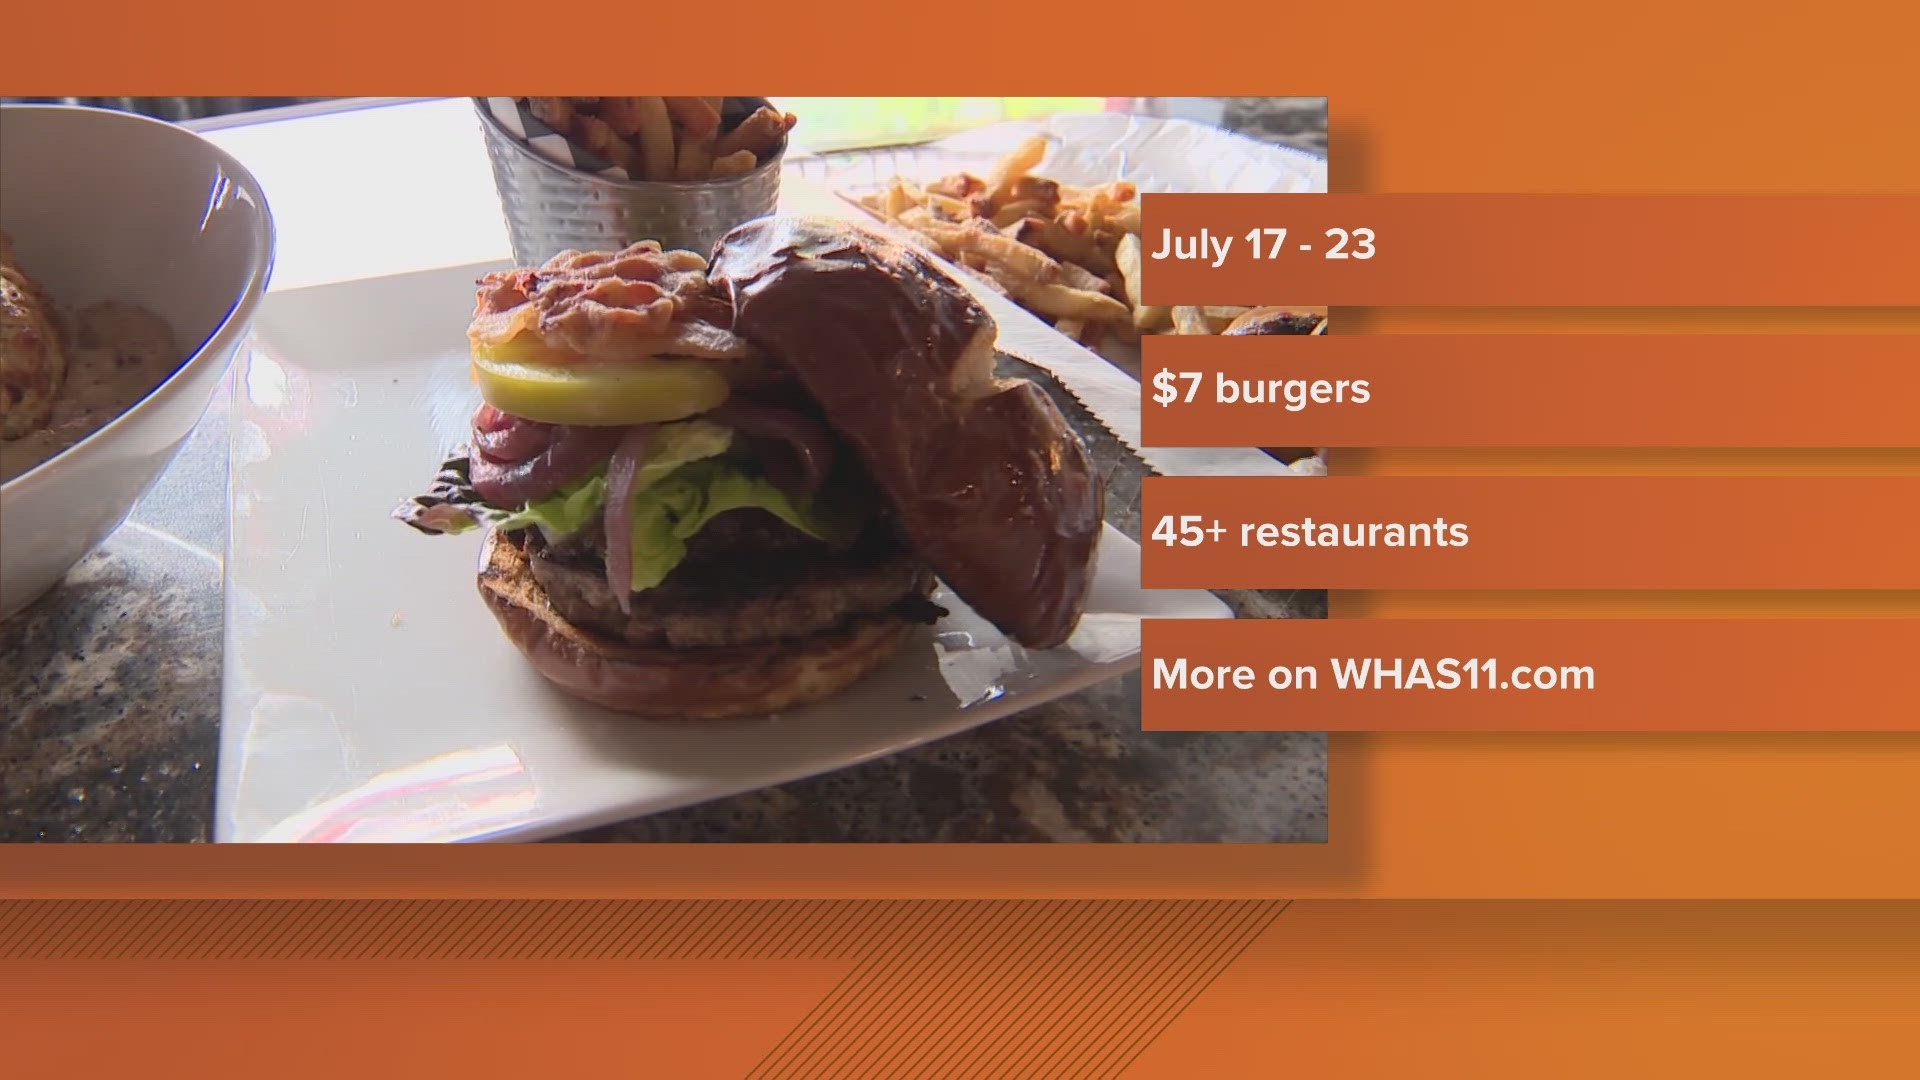 Louisville Burger Week returns in July